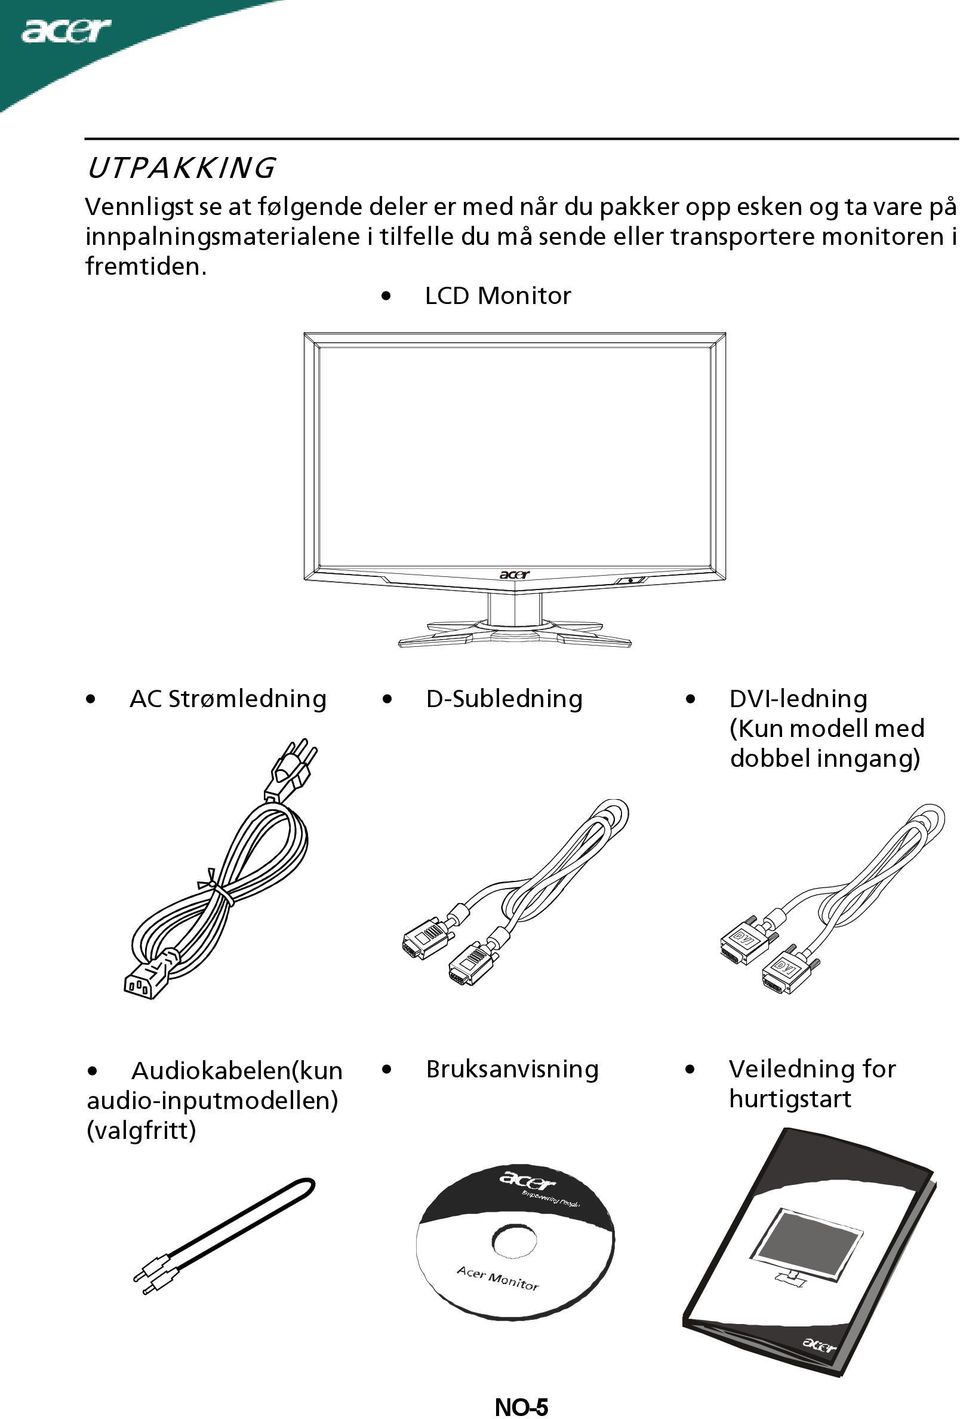 LCD Monitor AC Strømledning D-Subledning DVI-ledning (Kun modell med dobbel inngang)